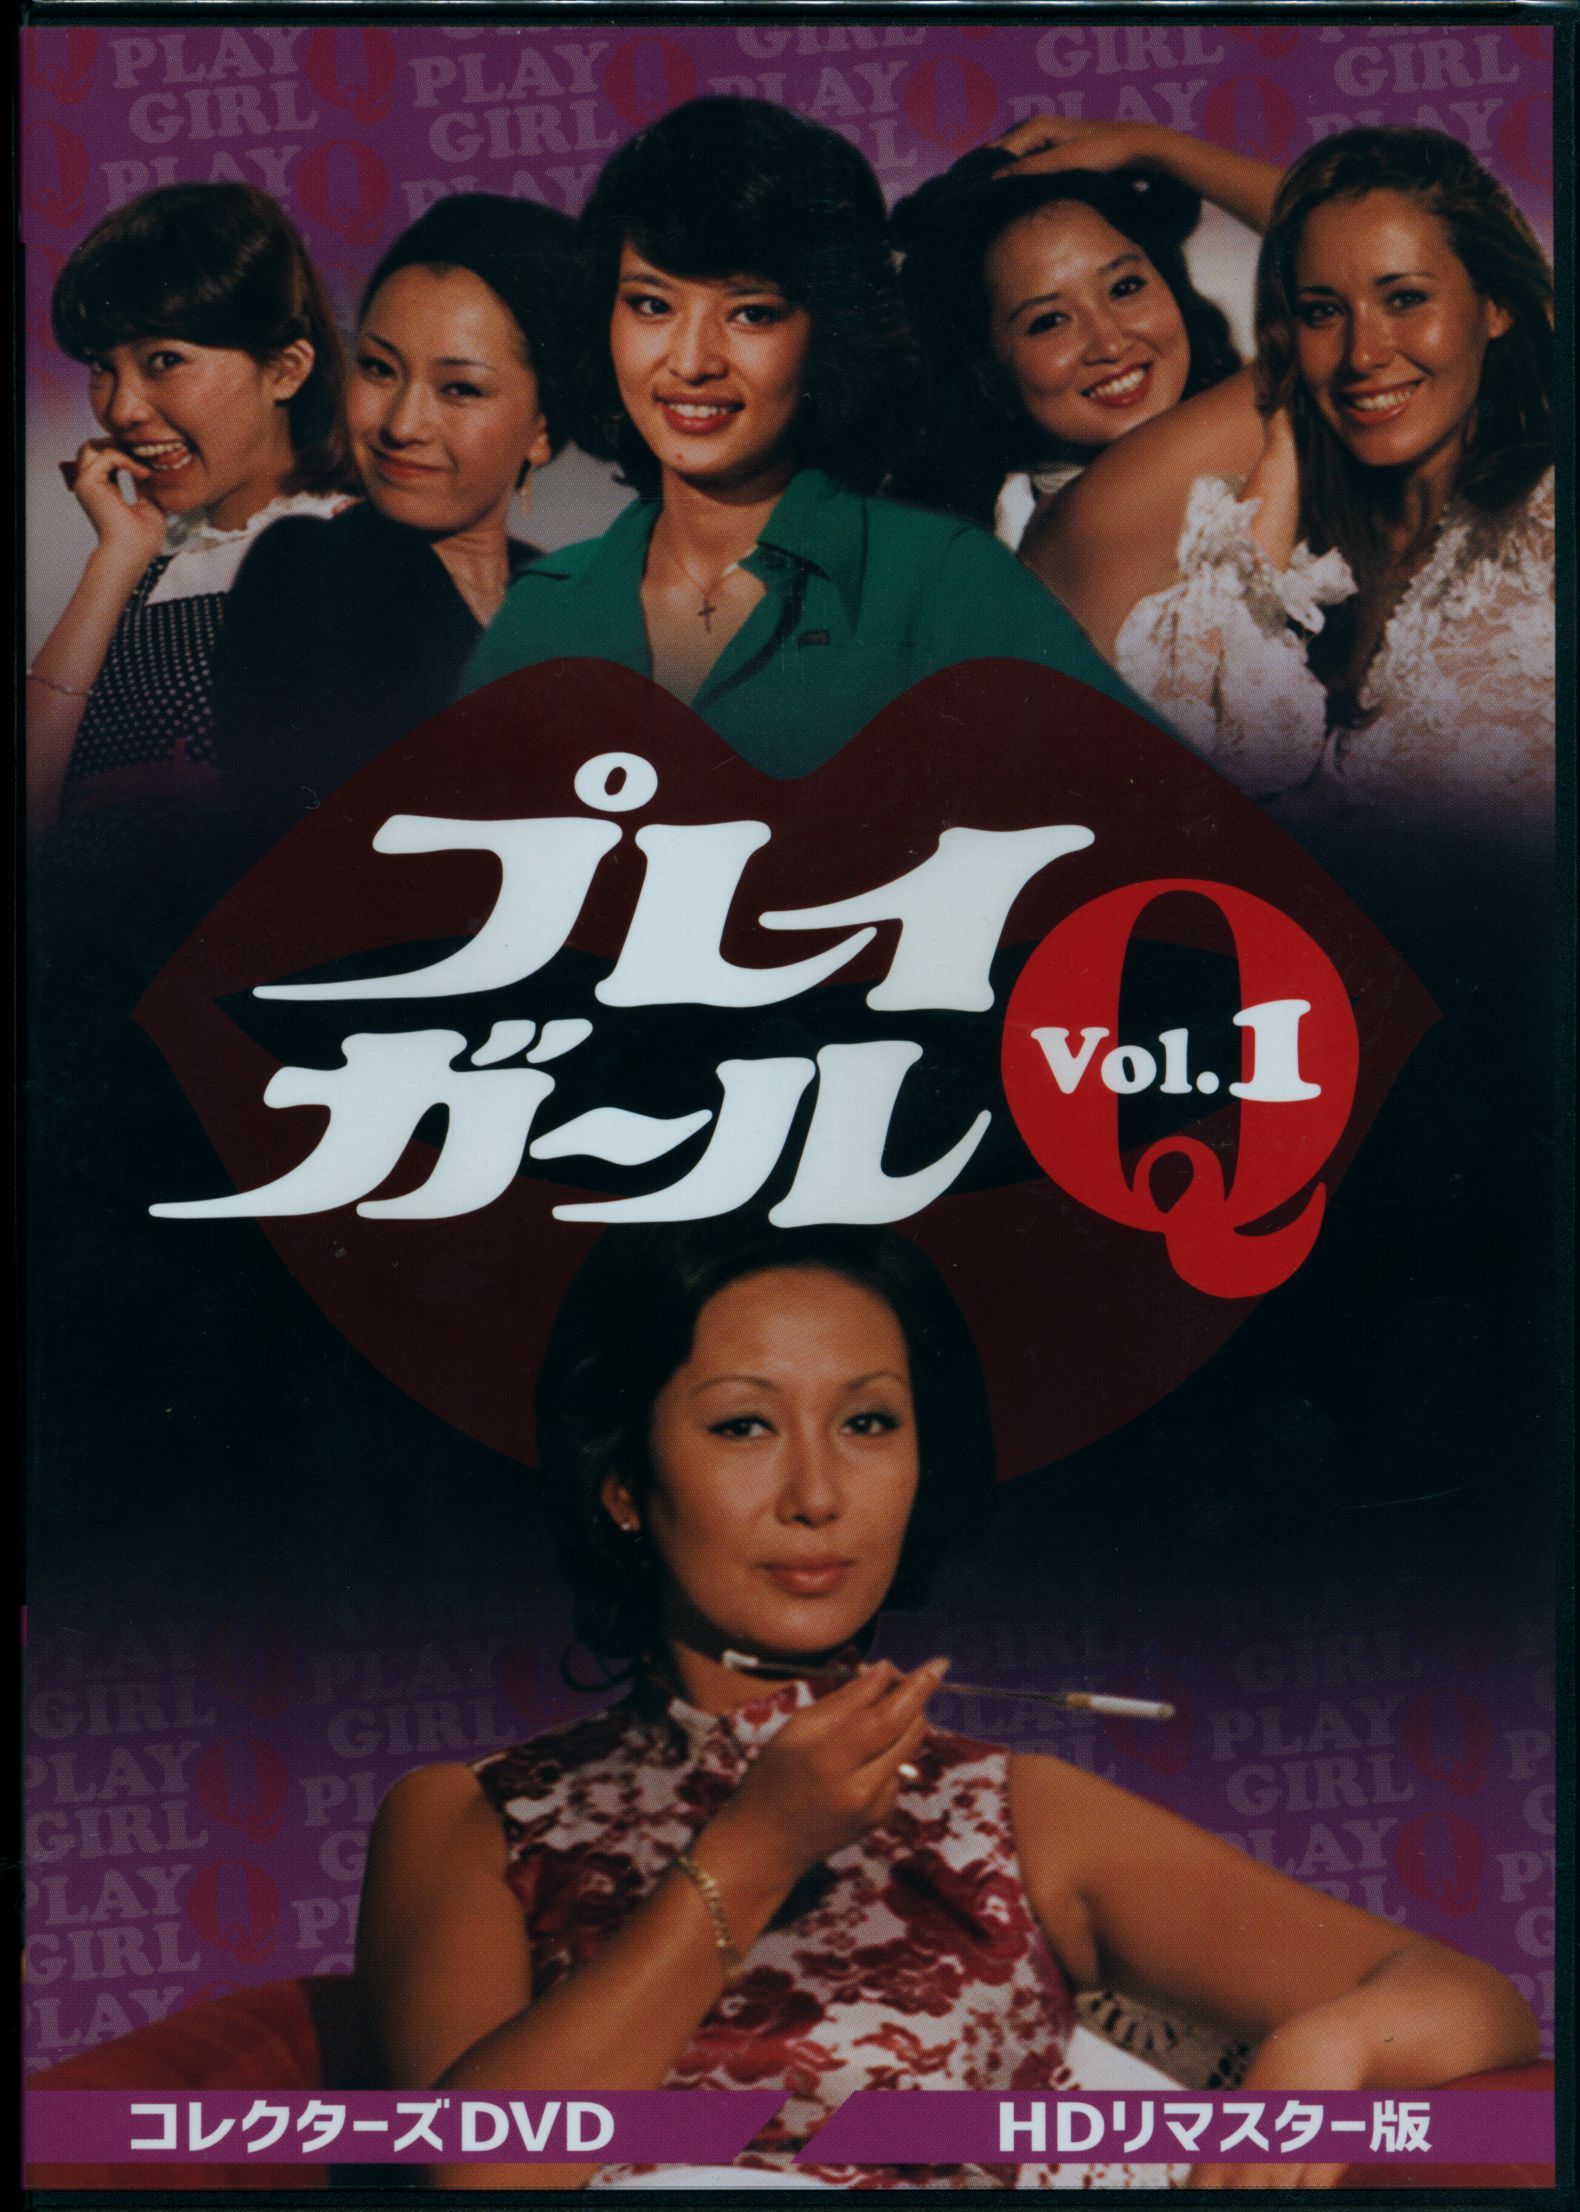 プレイガールQ[DVD] コレクターズDVD Vol.2 [HDリマスター版] TVドラマ